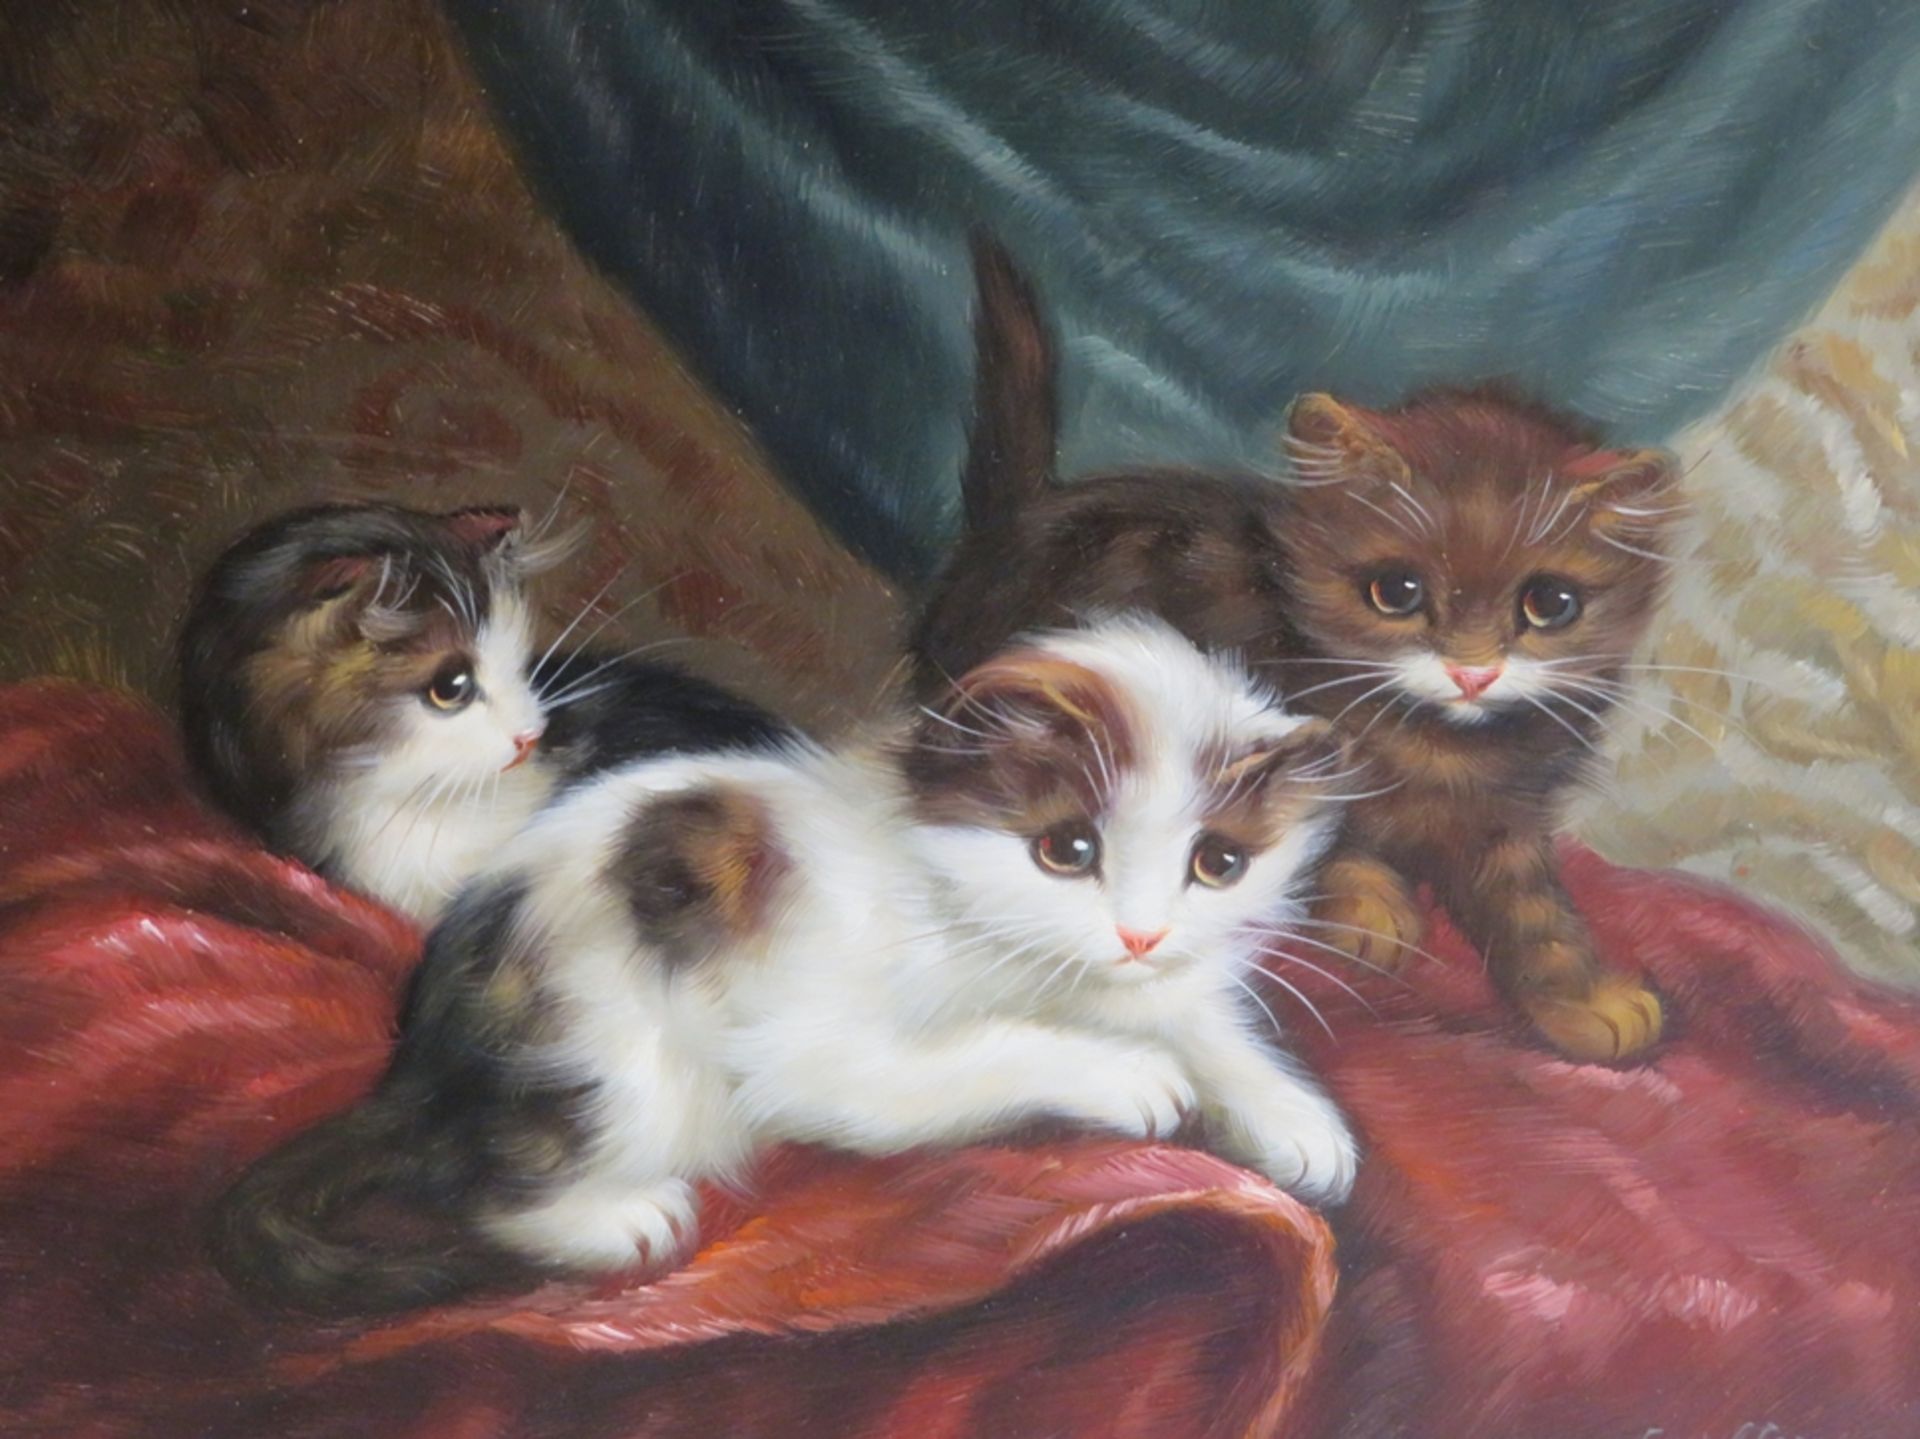 Walter, F., Maler 1. Hälfte 20. Jahrhundert, "Drei kleine Katzen", re.u.sign., Öl/Holz, 20 x 25 cm,